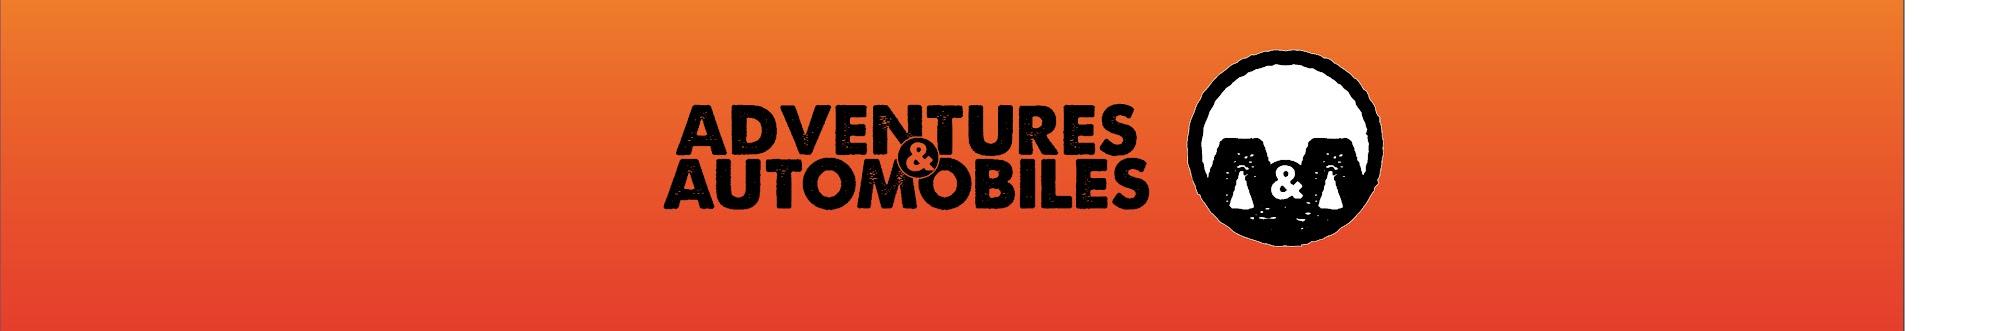 Adventures & Automobiles